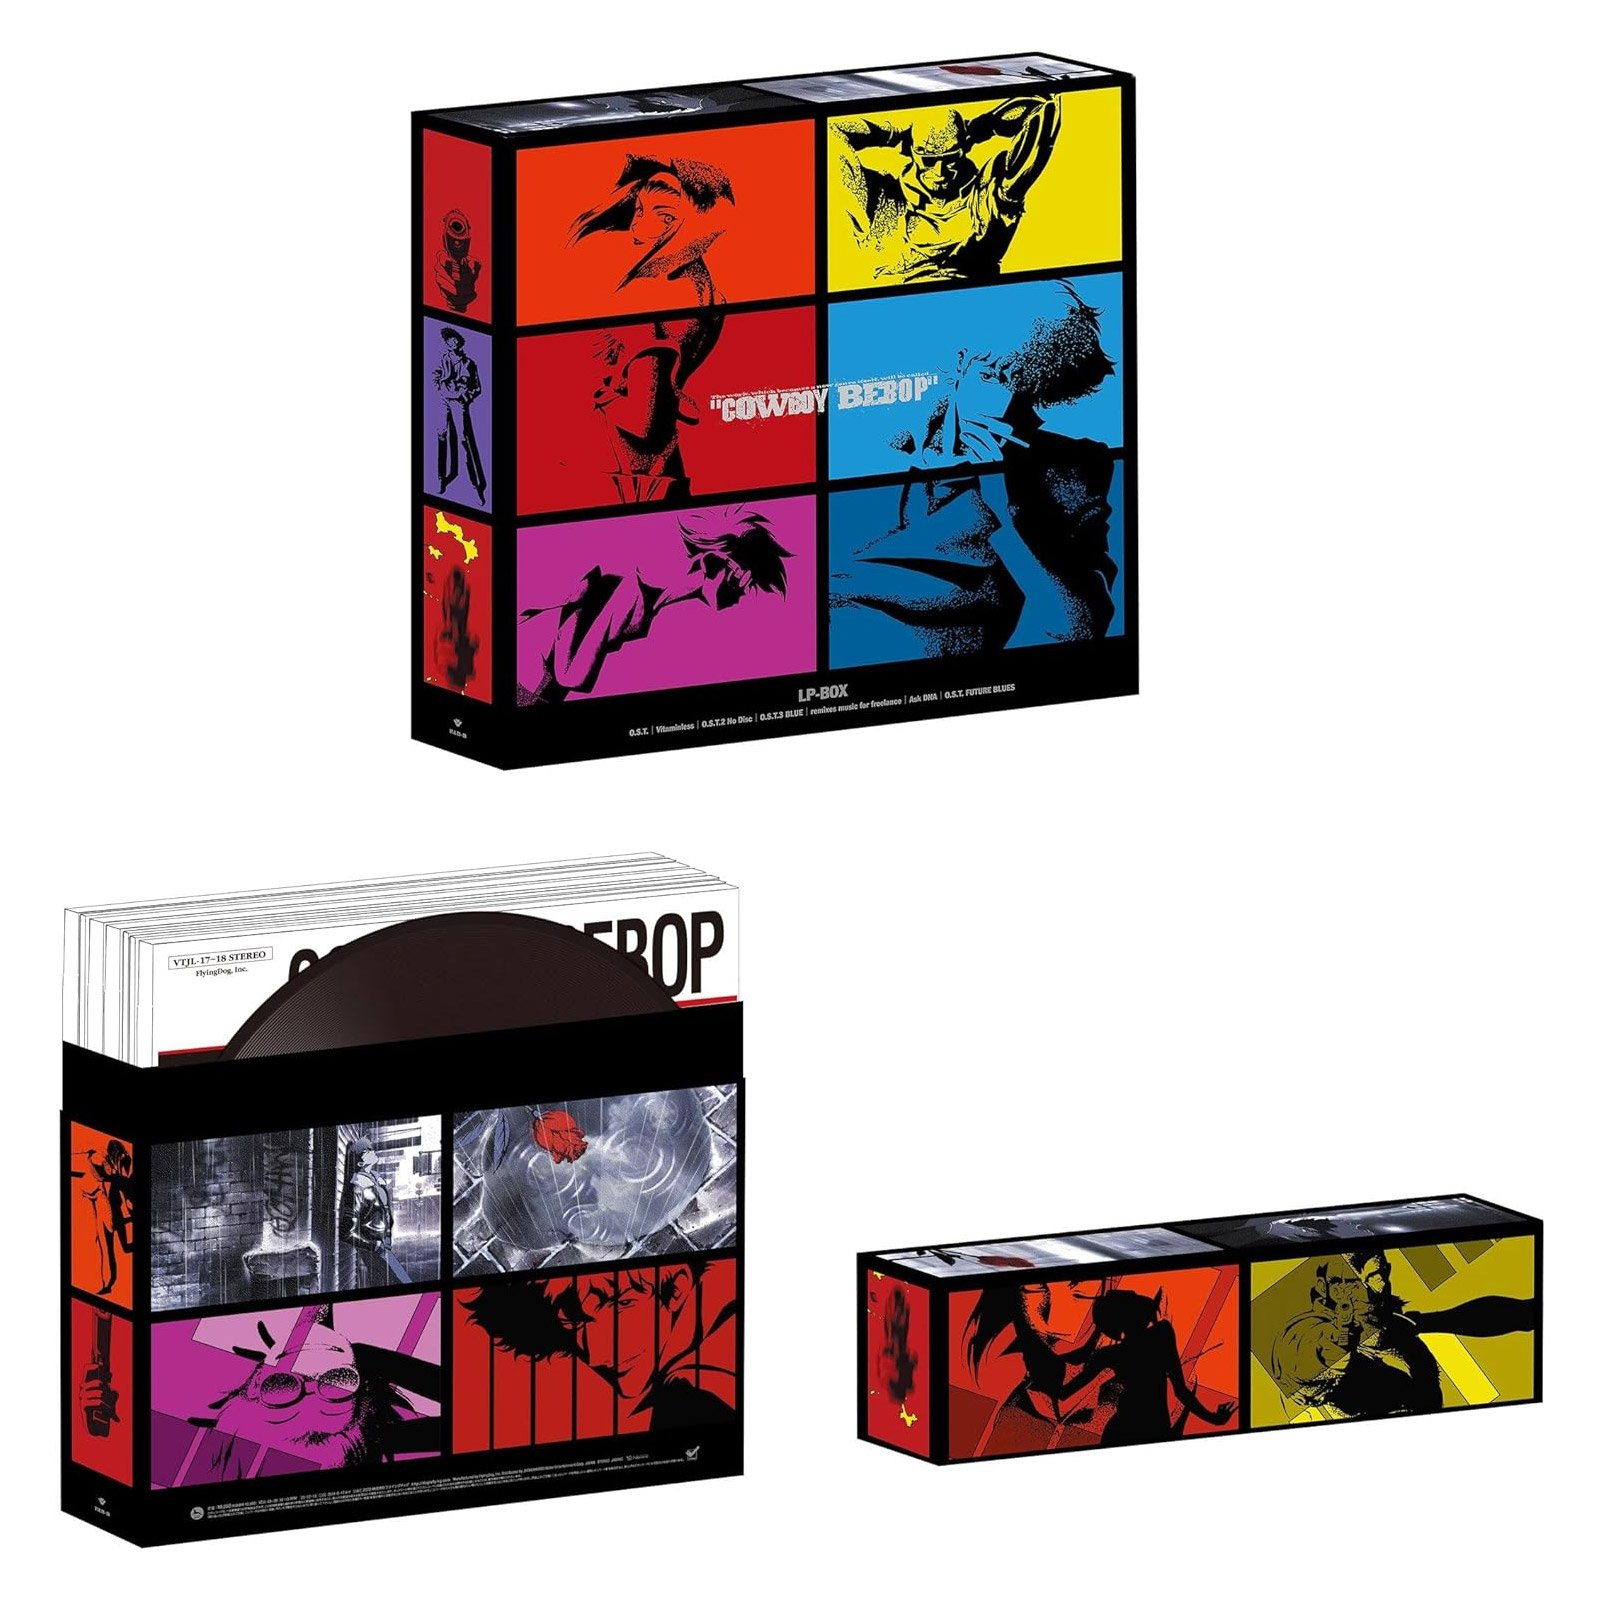 Yoko Kanno · Cowboy Bebop (LP) [Limited 25th Anniversary Box Set 